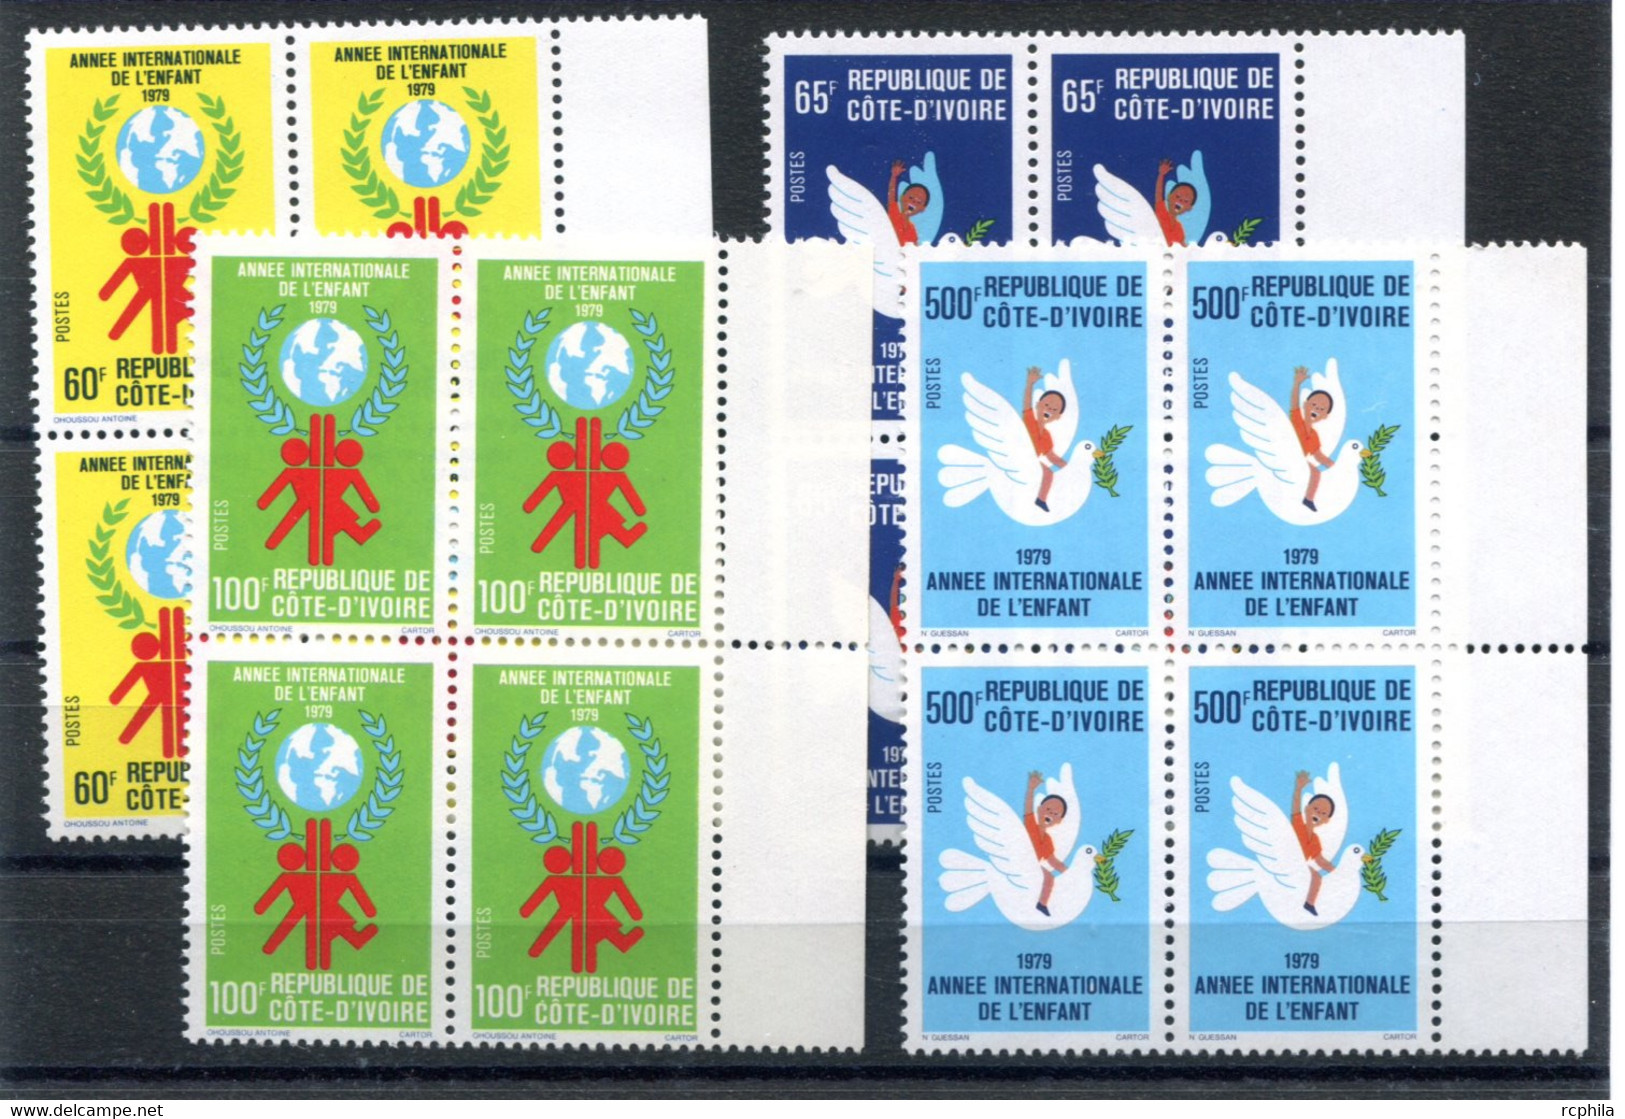 RC 19211 COTE D'IVOIRE COTE 34€ N° 489 / 492 ANNÉE INTERNATIONAL DE L'ENFANT SÉRIE COMPLETE BLOCS DE 4 NEUF ** MNH - TB - Ivory Coast (1960-...)